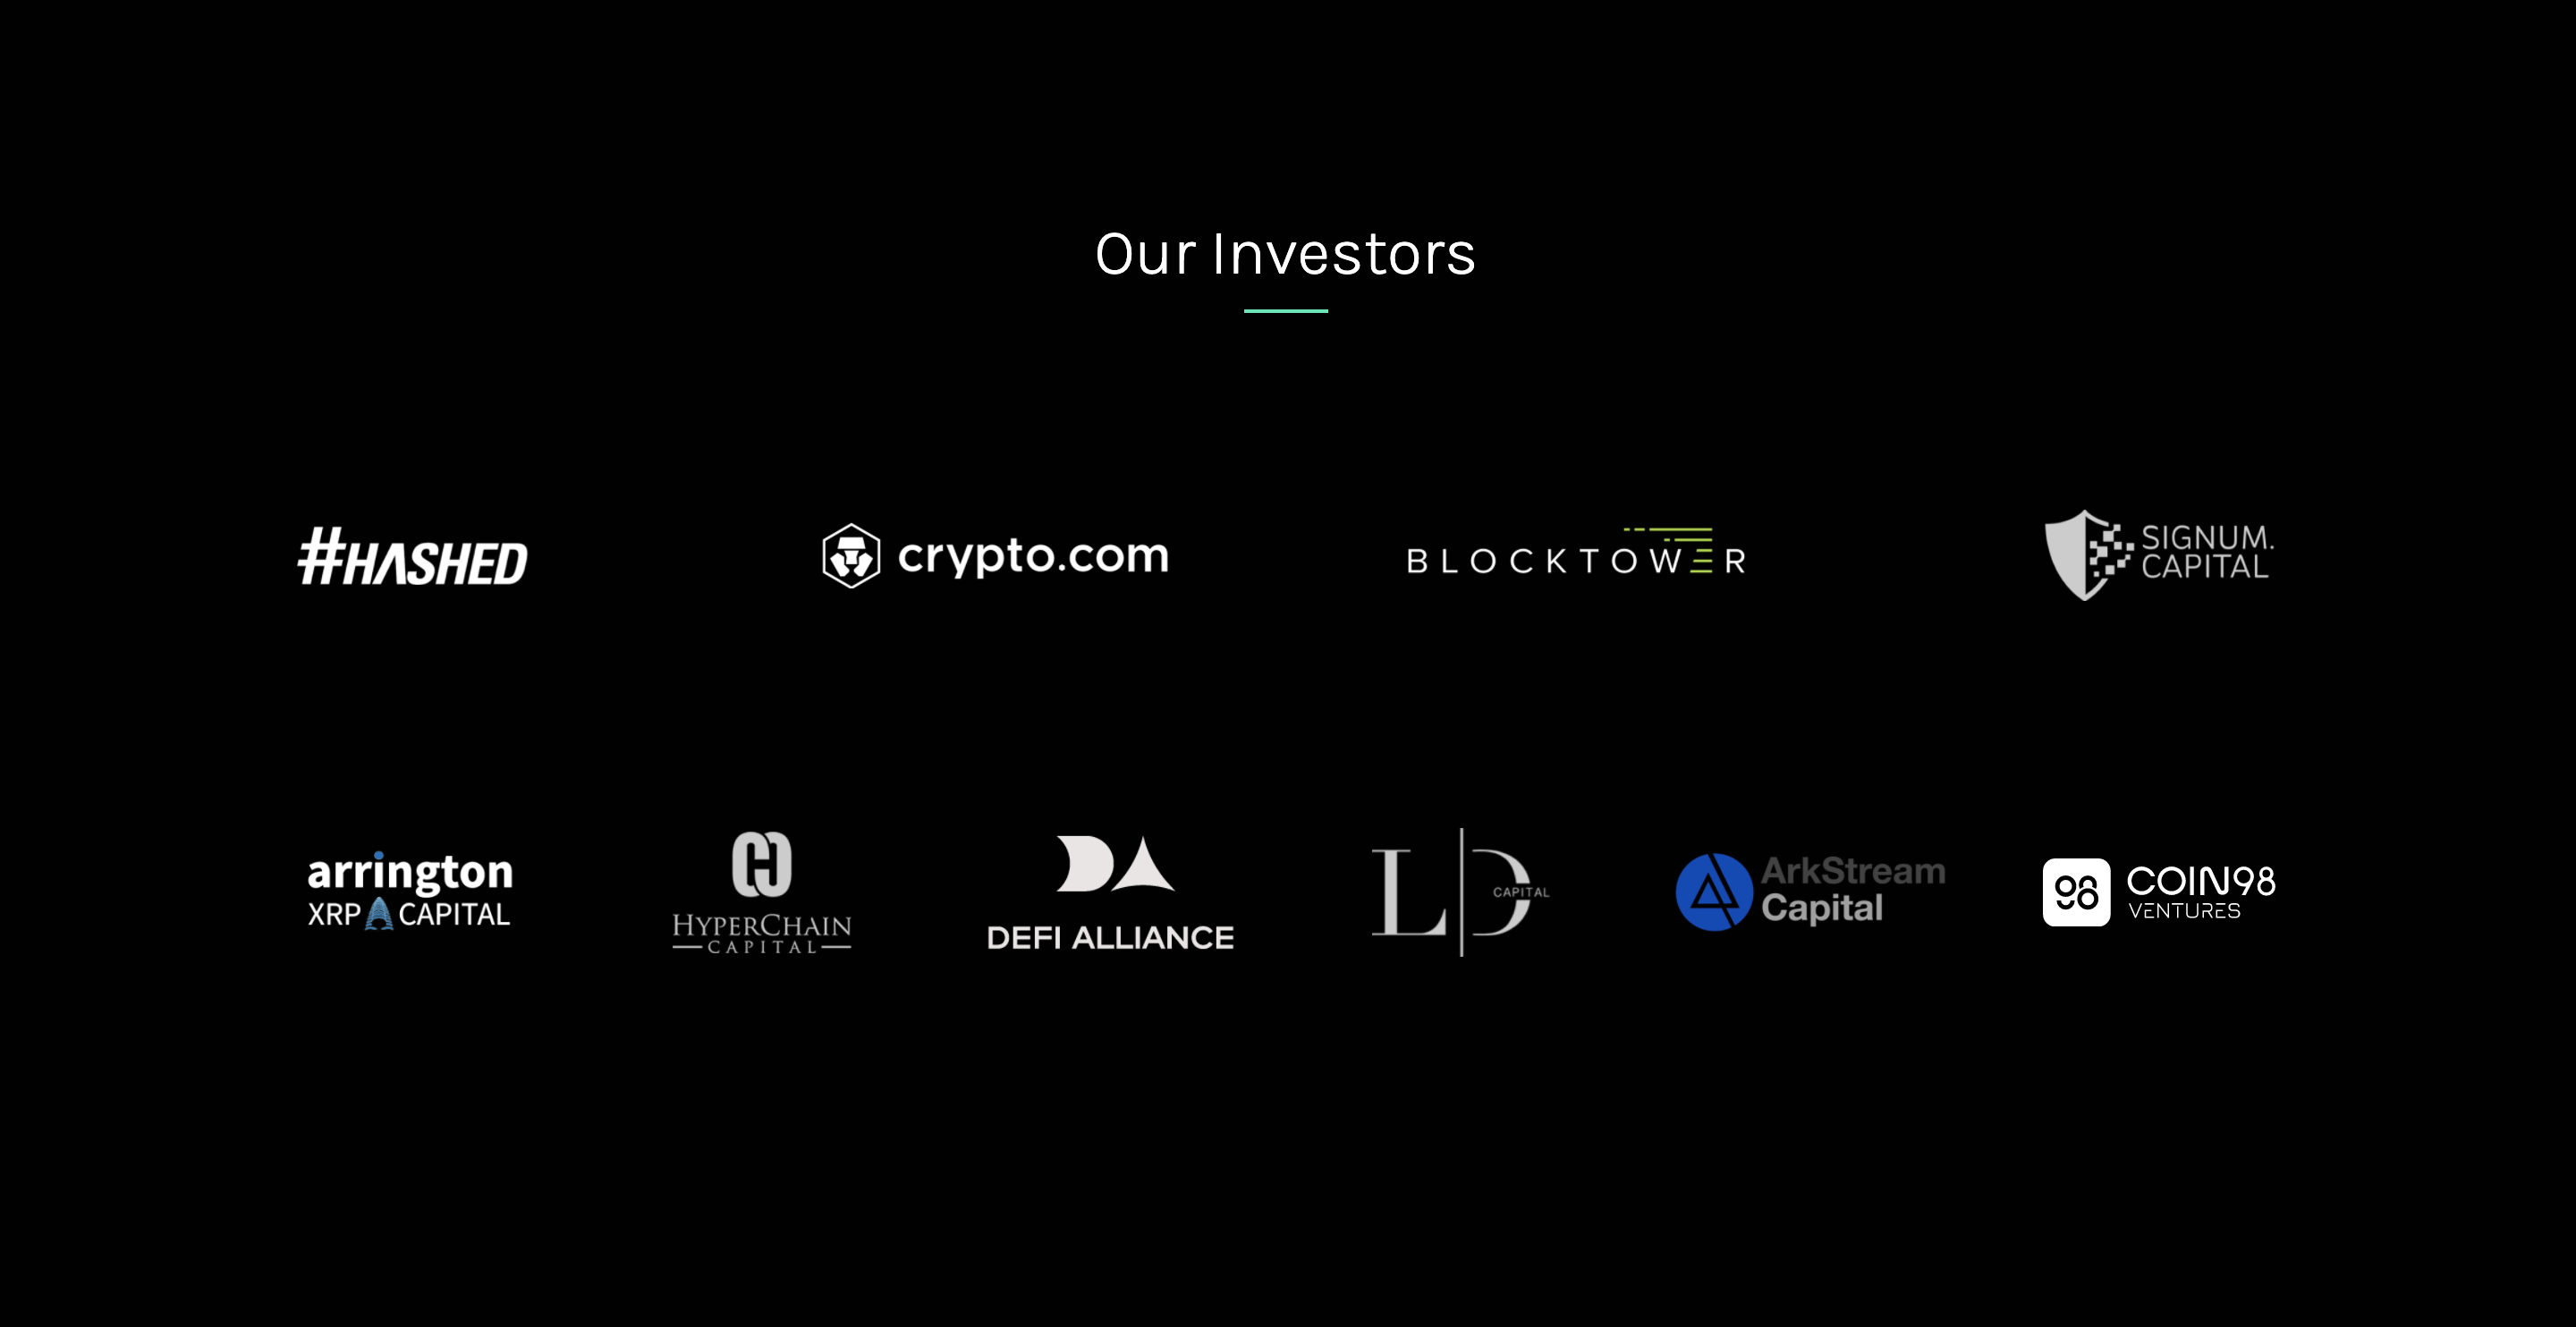 Krystal Investors